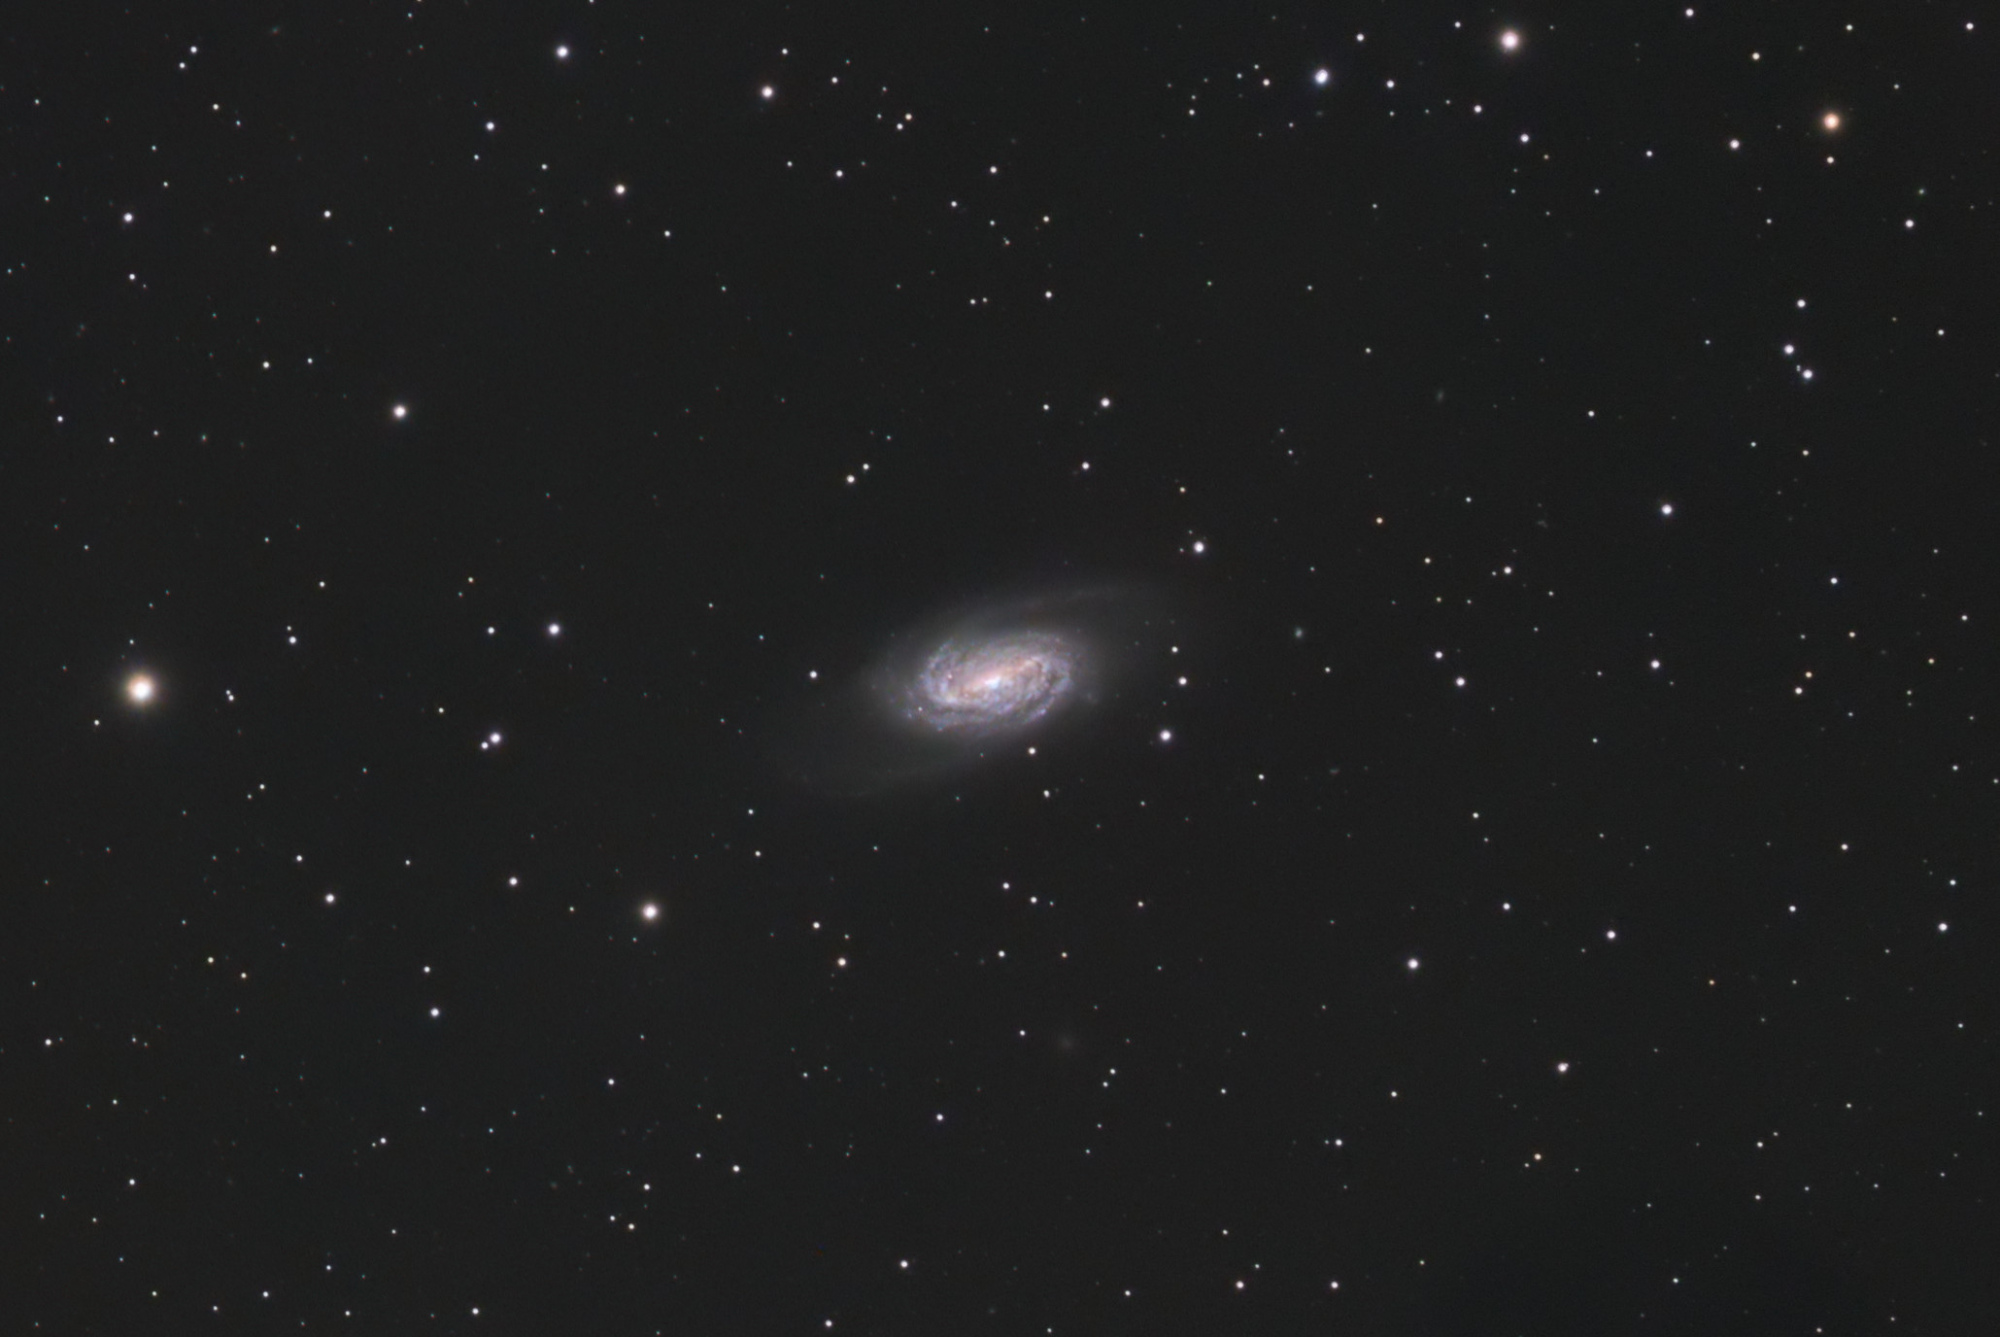 NGC2903_48x5minLRBGTraite.thumb.jpg.07a9c9fc7a8c36dc58f4a9756b07b65c.jpg